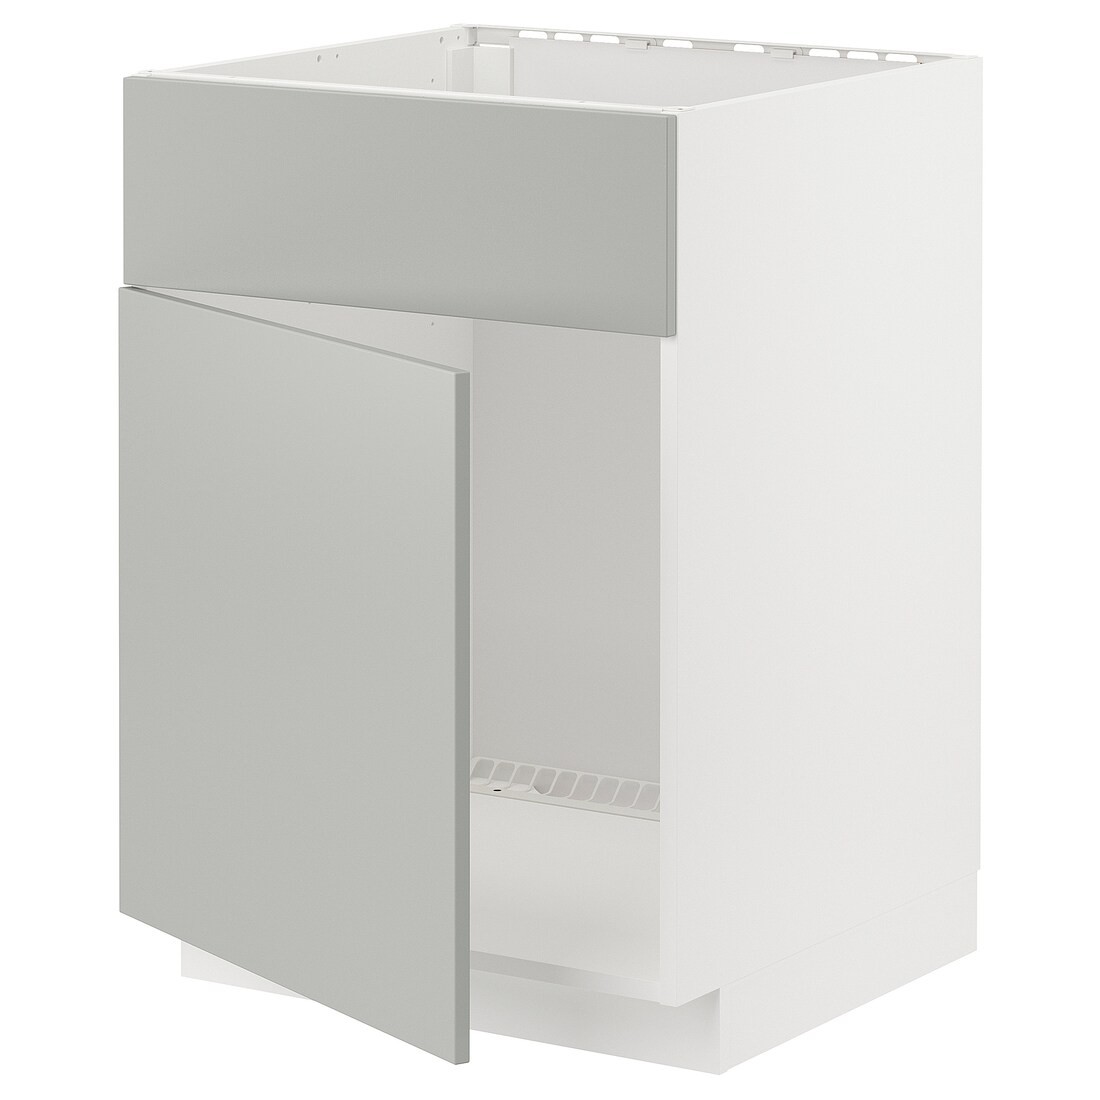 METOD Шкаф под мойку / дверь / фасад, белый / Хавсторп светло-серый, 60x60 см